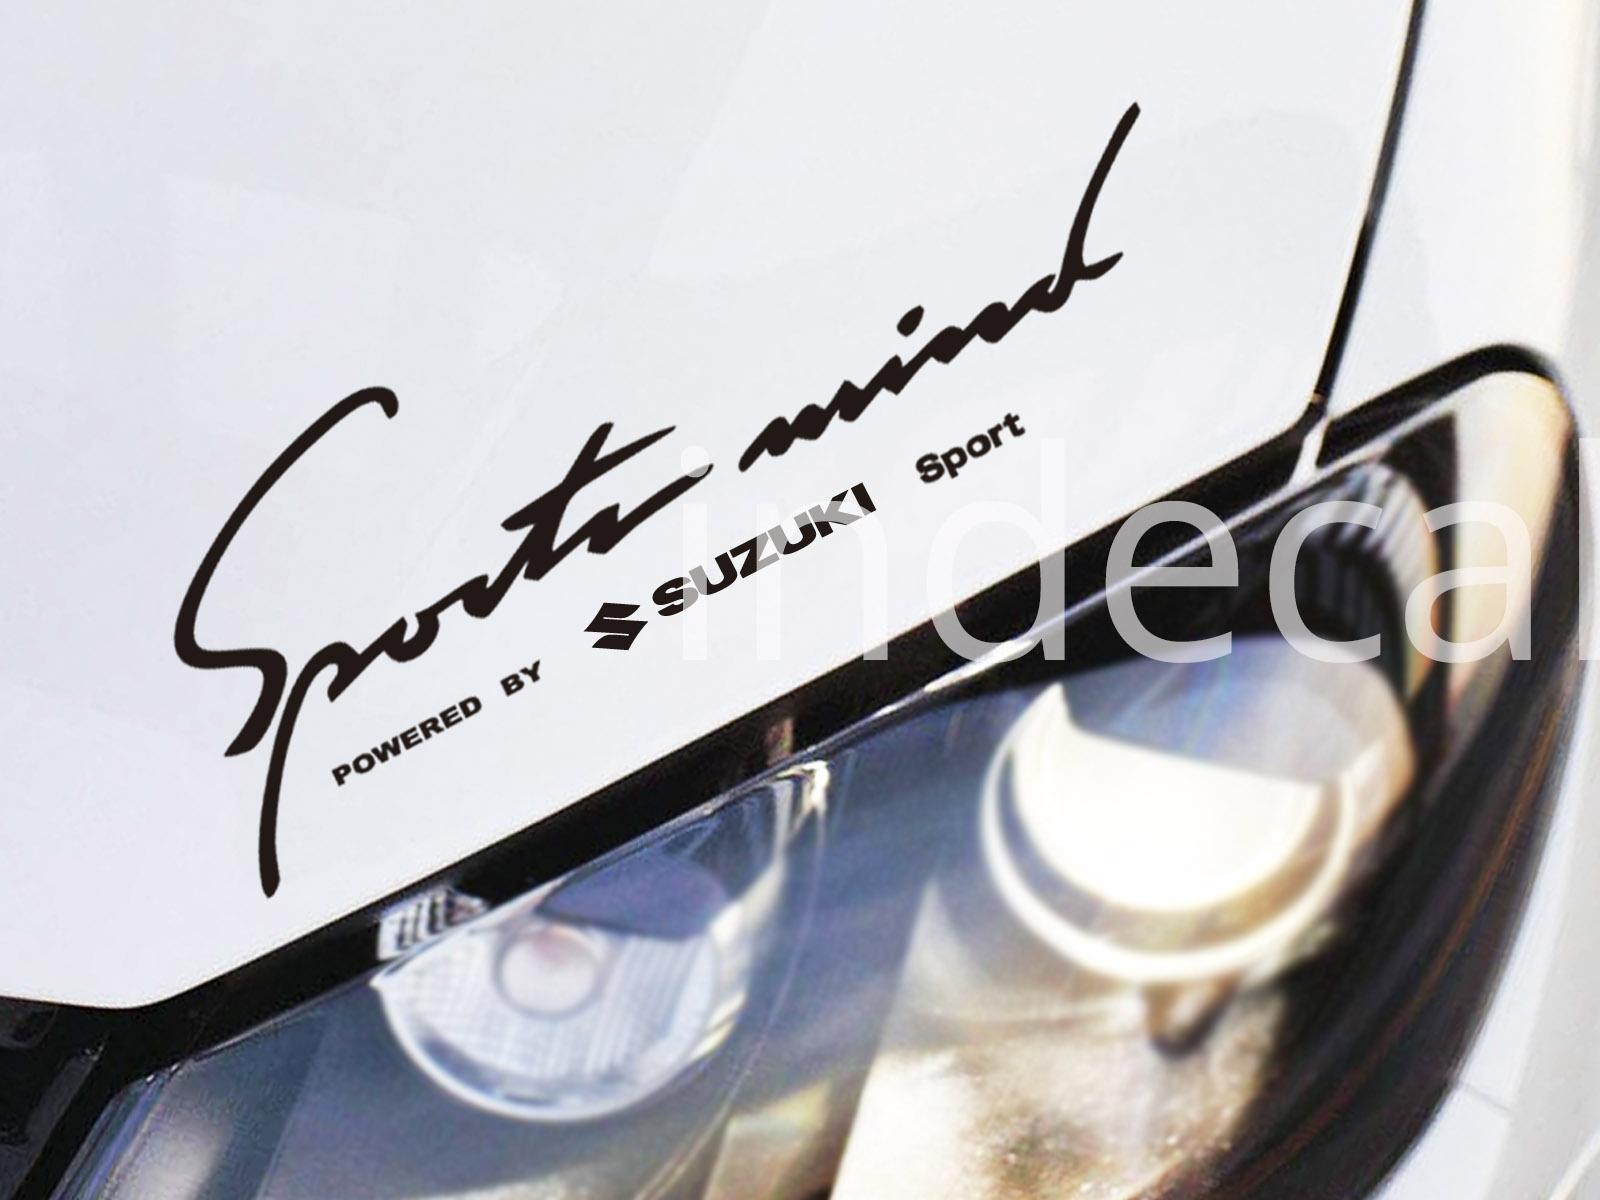 1 x Suzuki Sports Mind Sticker - Black